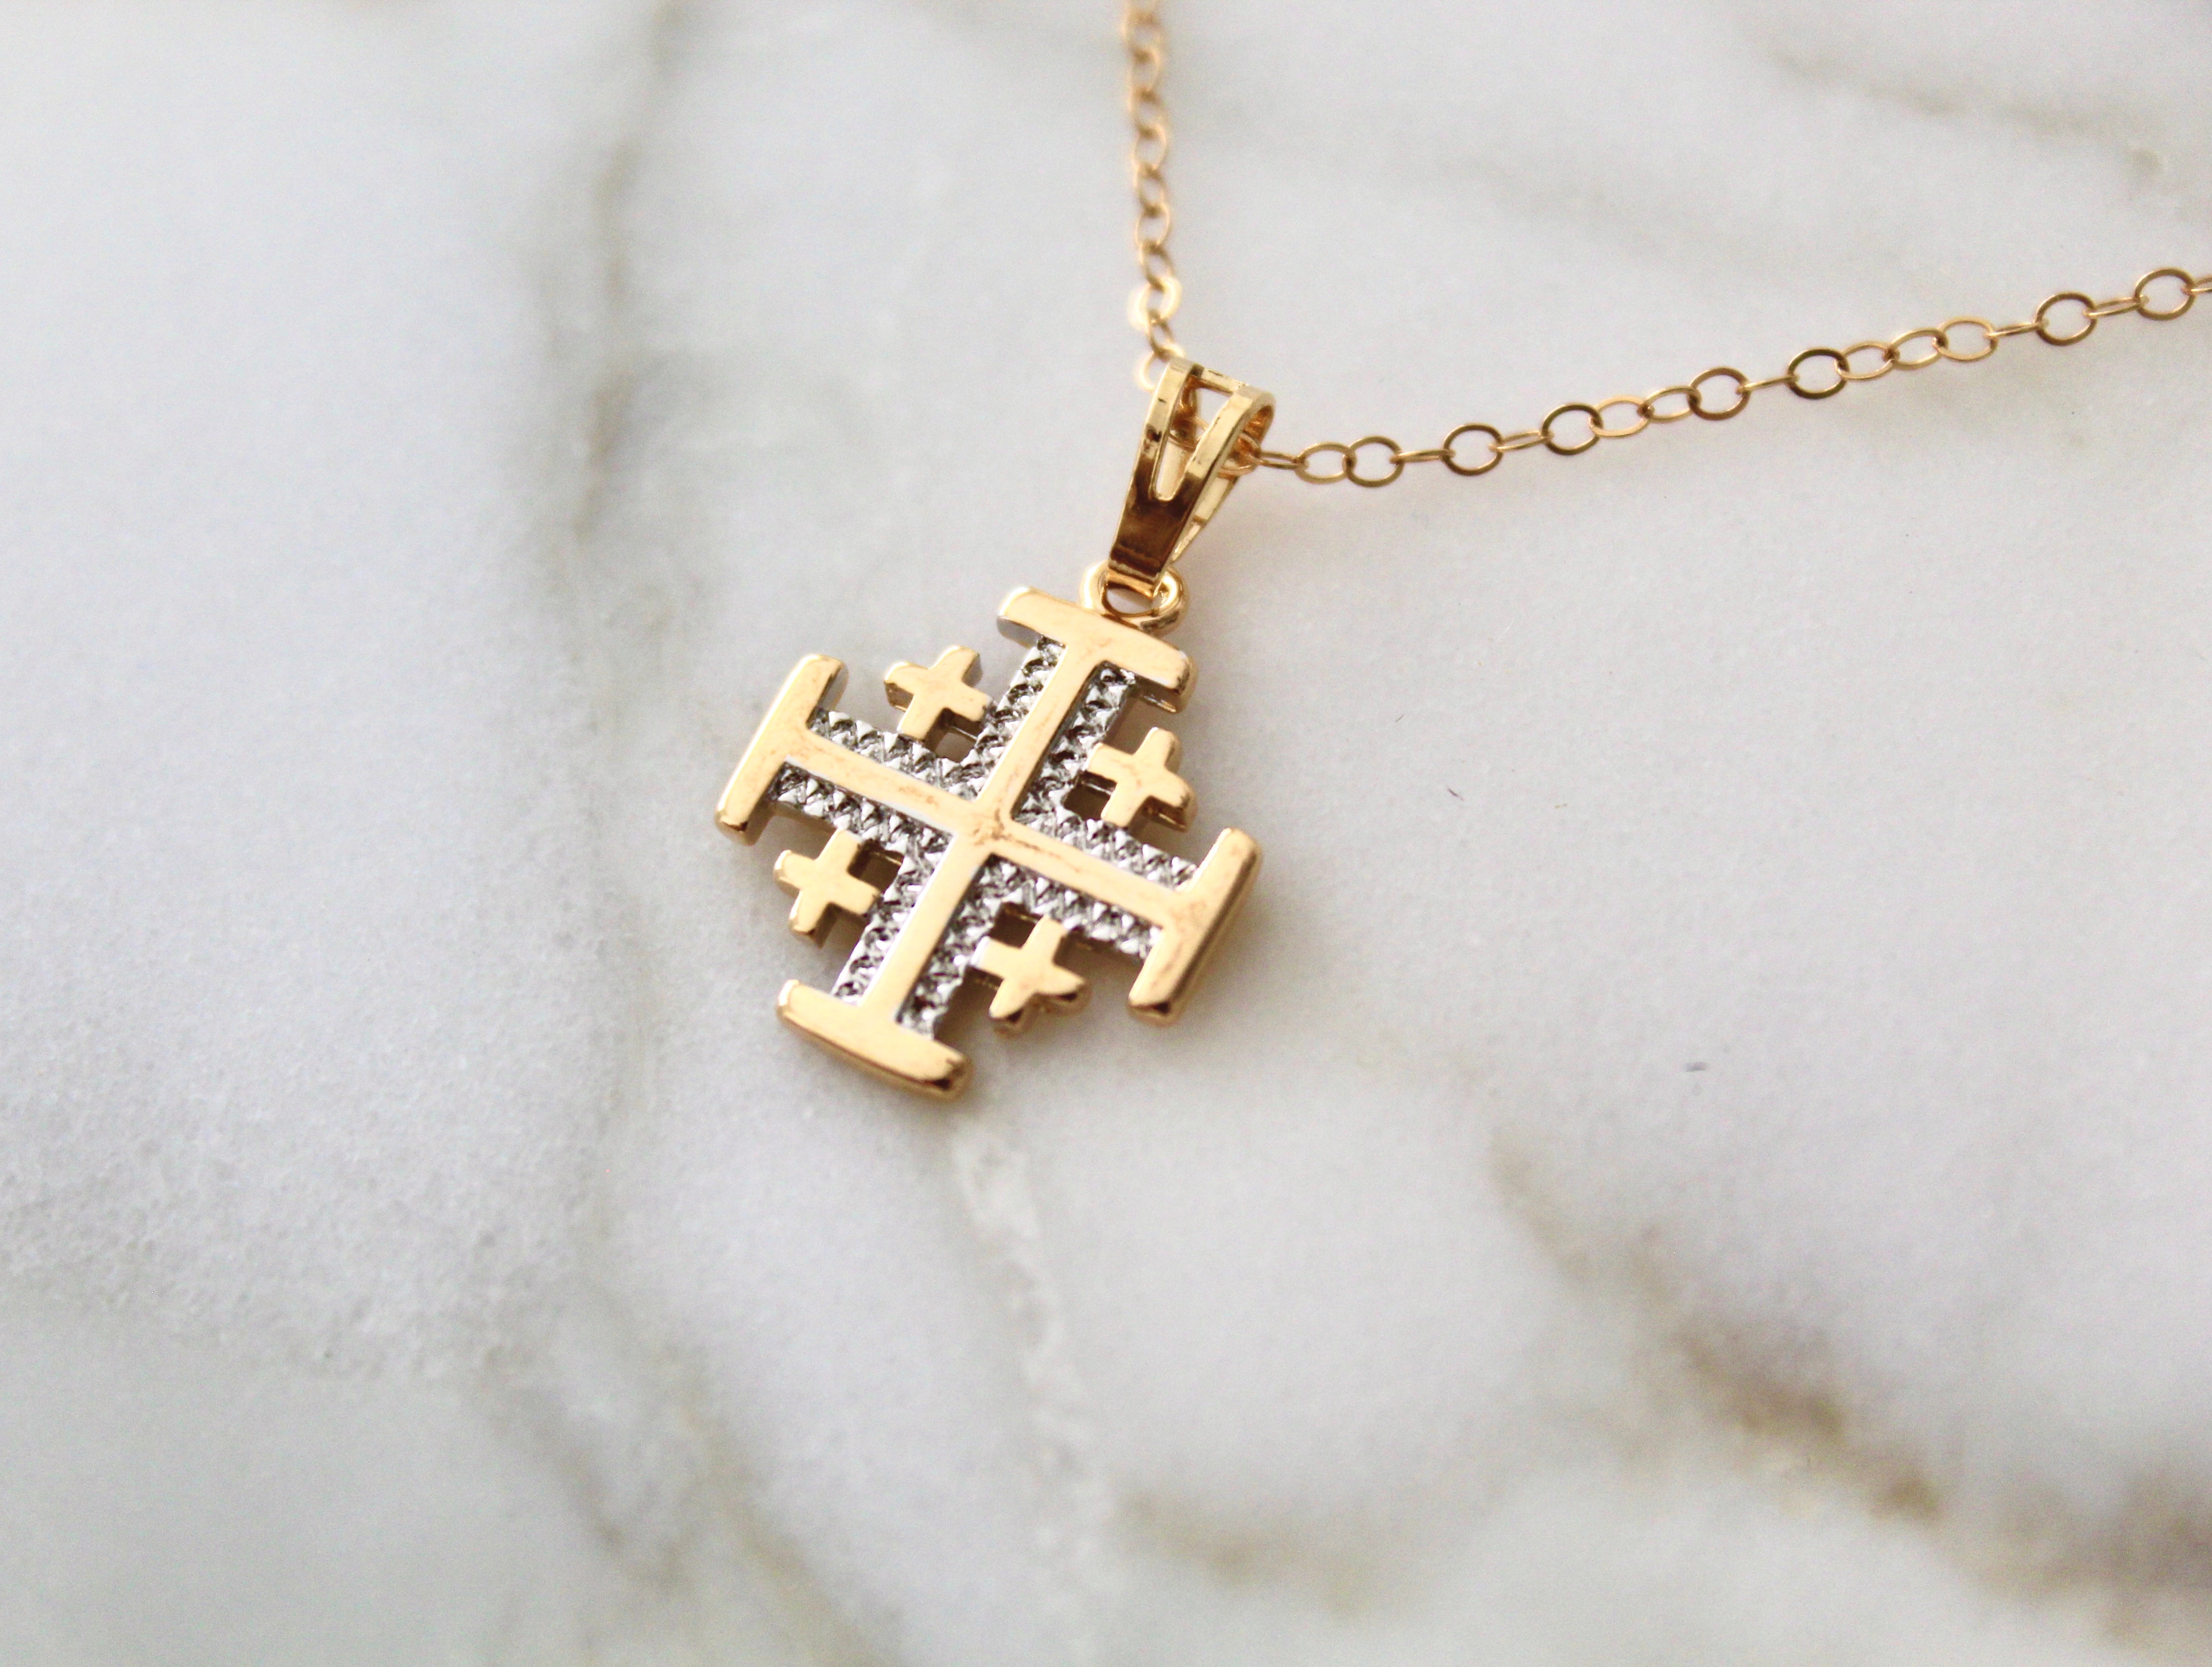 Jerusalem Cross Necklace - 925 Sterling Silver - Five-fold Pendant Symbol  Potent | eBay